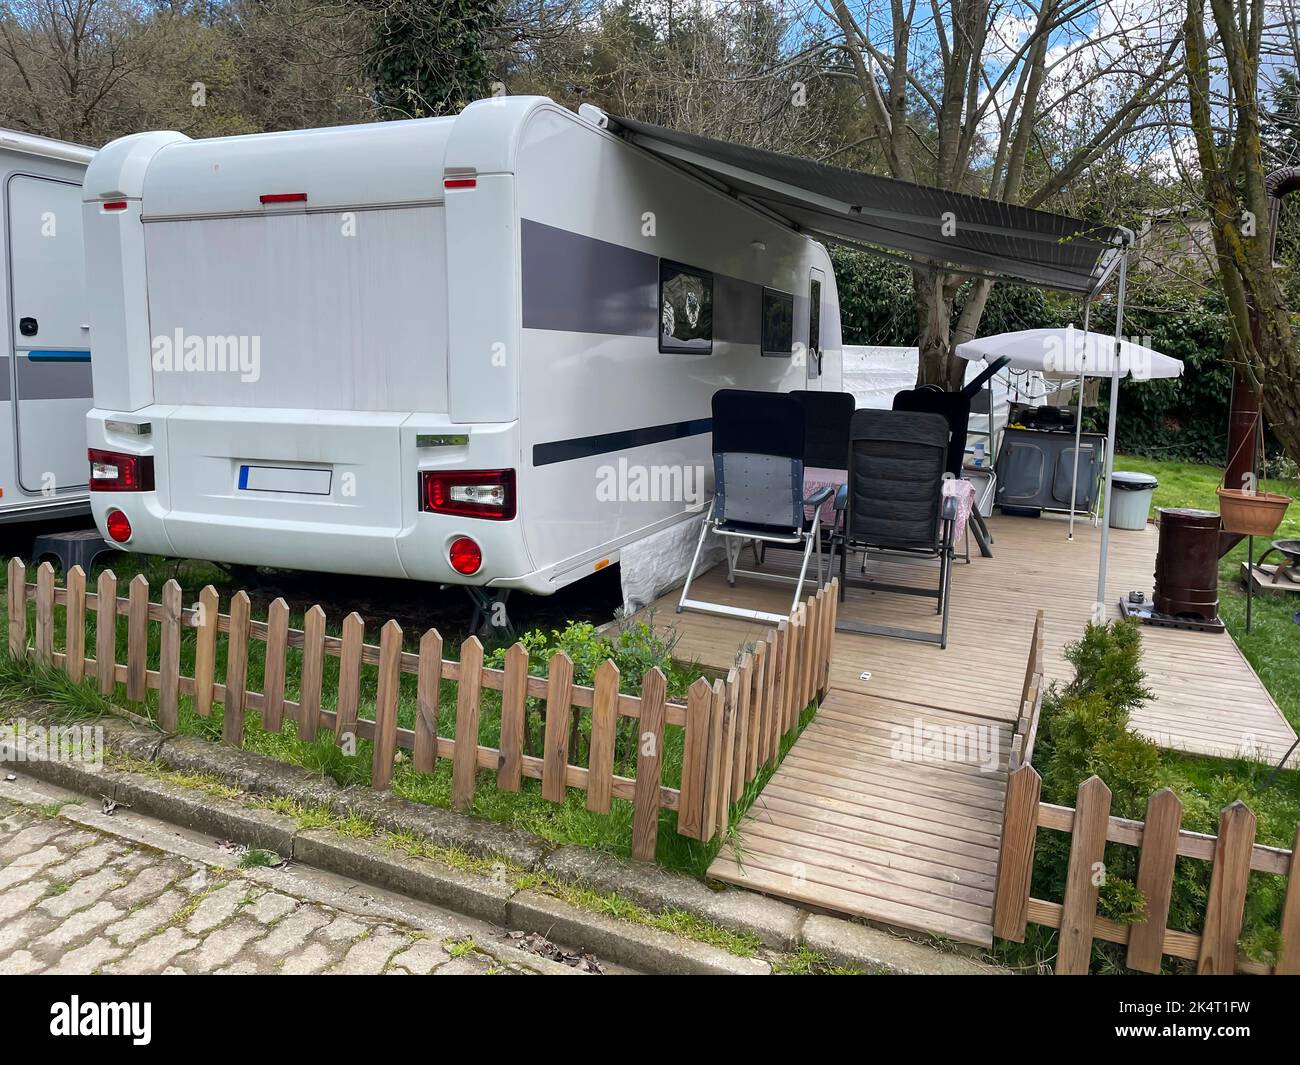 Wohnmobil-Wohnwagen mit Markise auf der Veranda auf einem Wohnmobil-Campingplatz. Caravan Camping Konzept. Istanbul, Türkei - 04. April 2022. Stockfoto